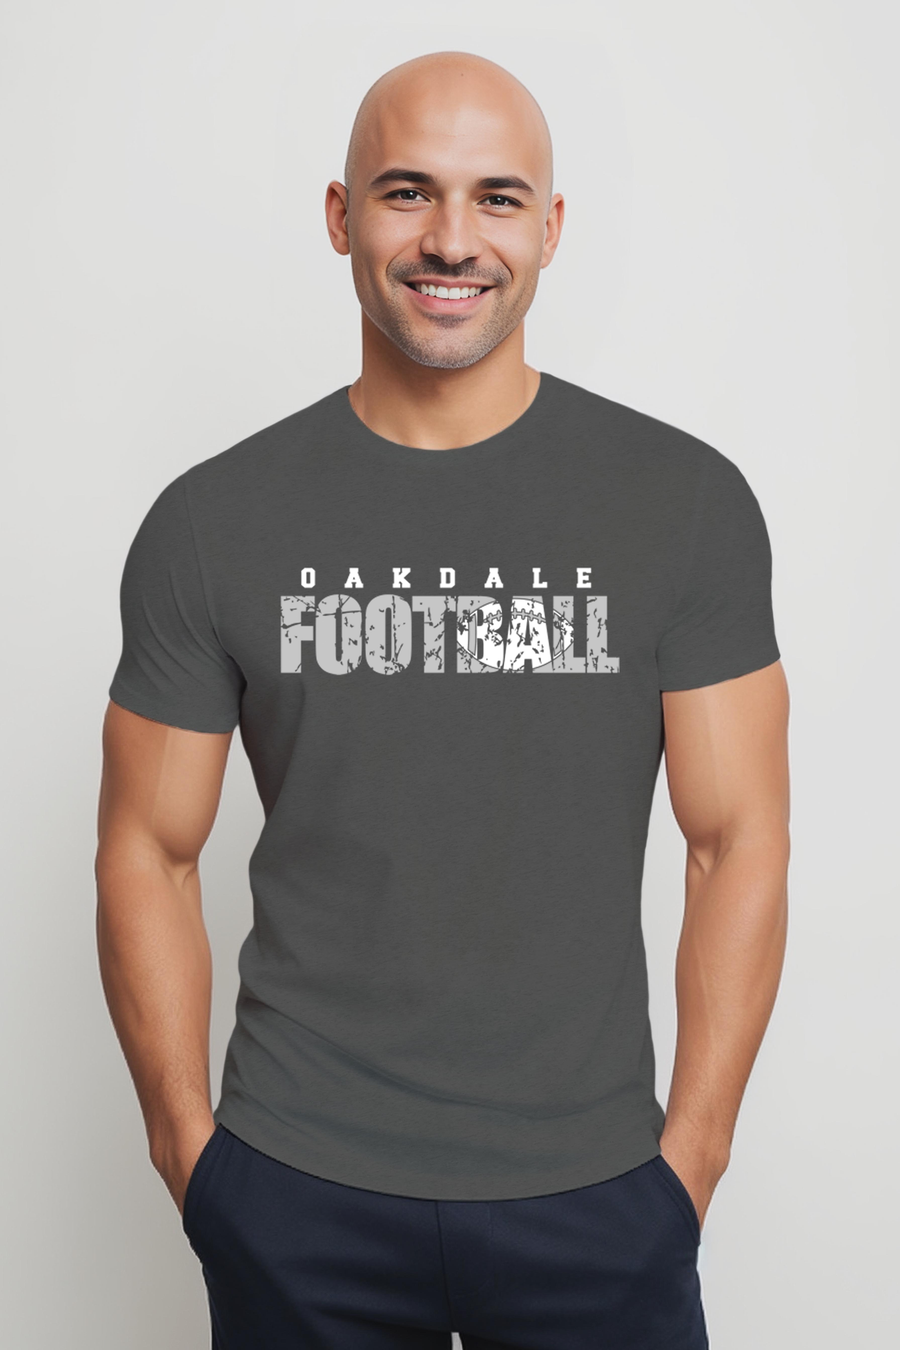 Oakdale Football- Distressed Design- Asphalt Shirt (OHS)